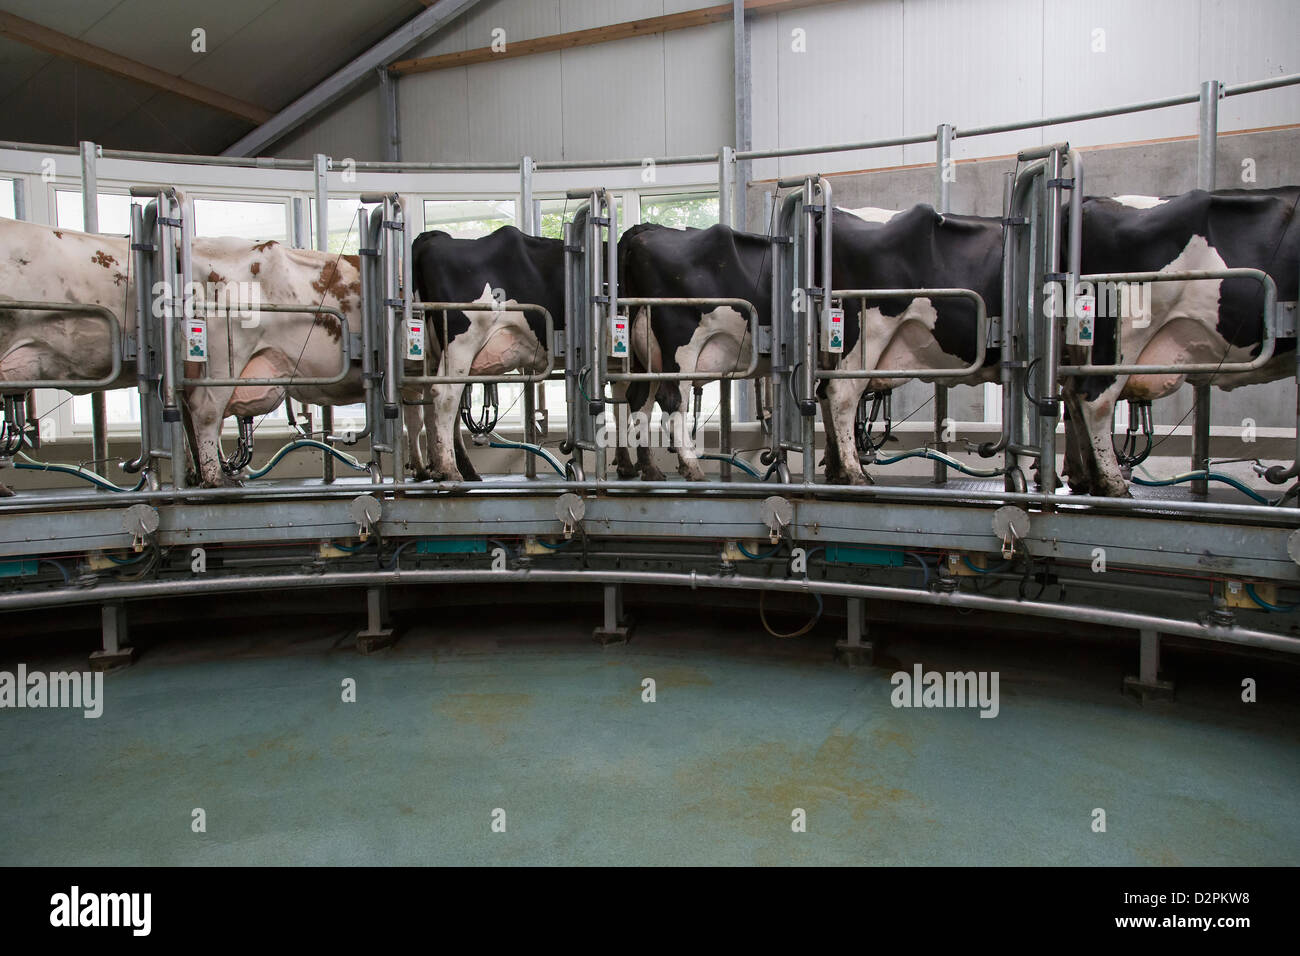 Les vaches laitières se tenant ensemble pour la traite Banque D'Images